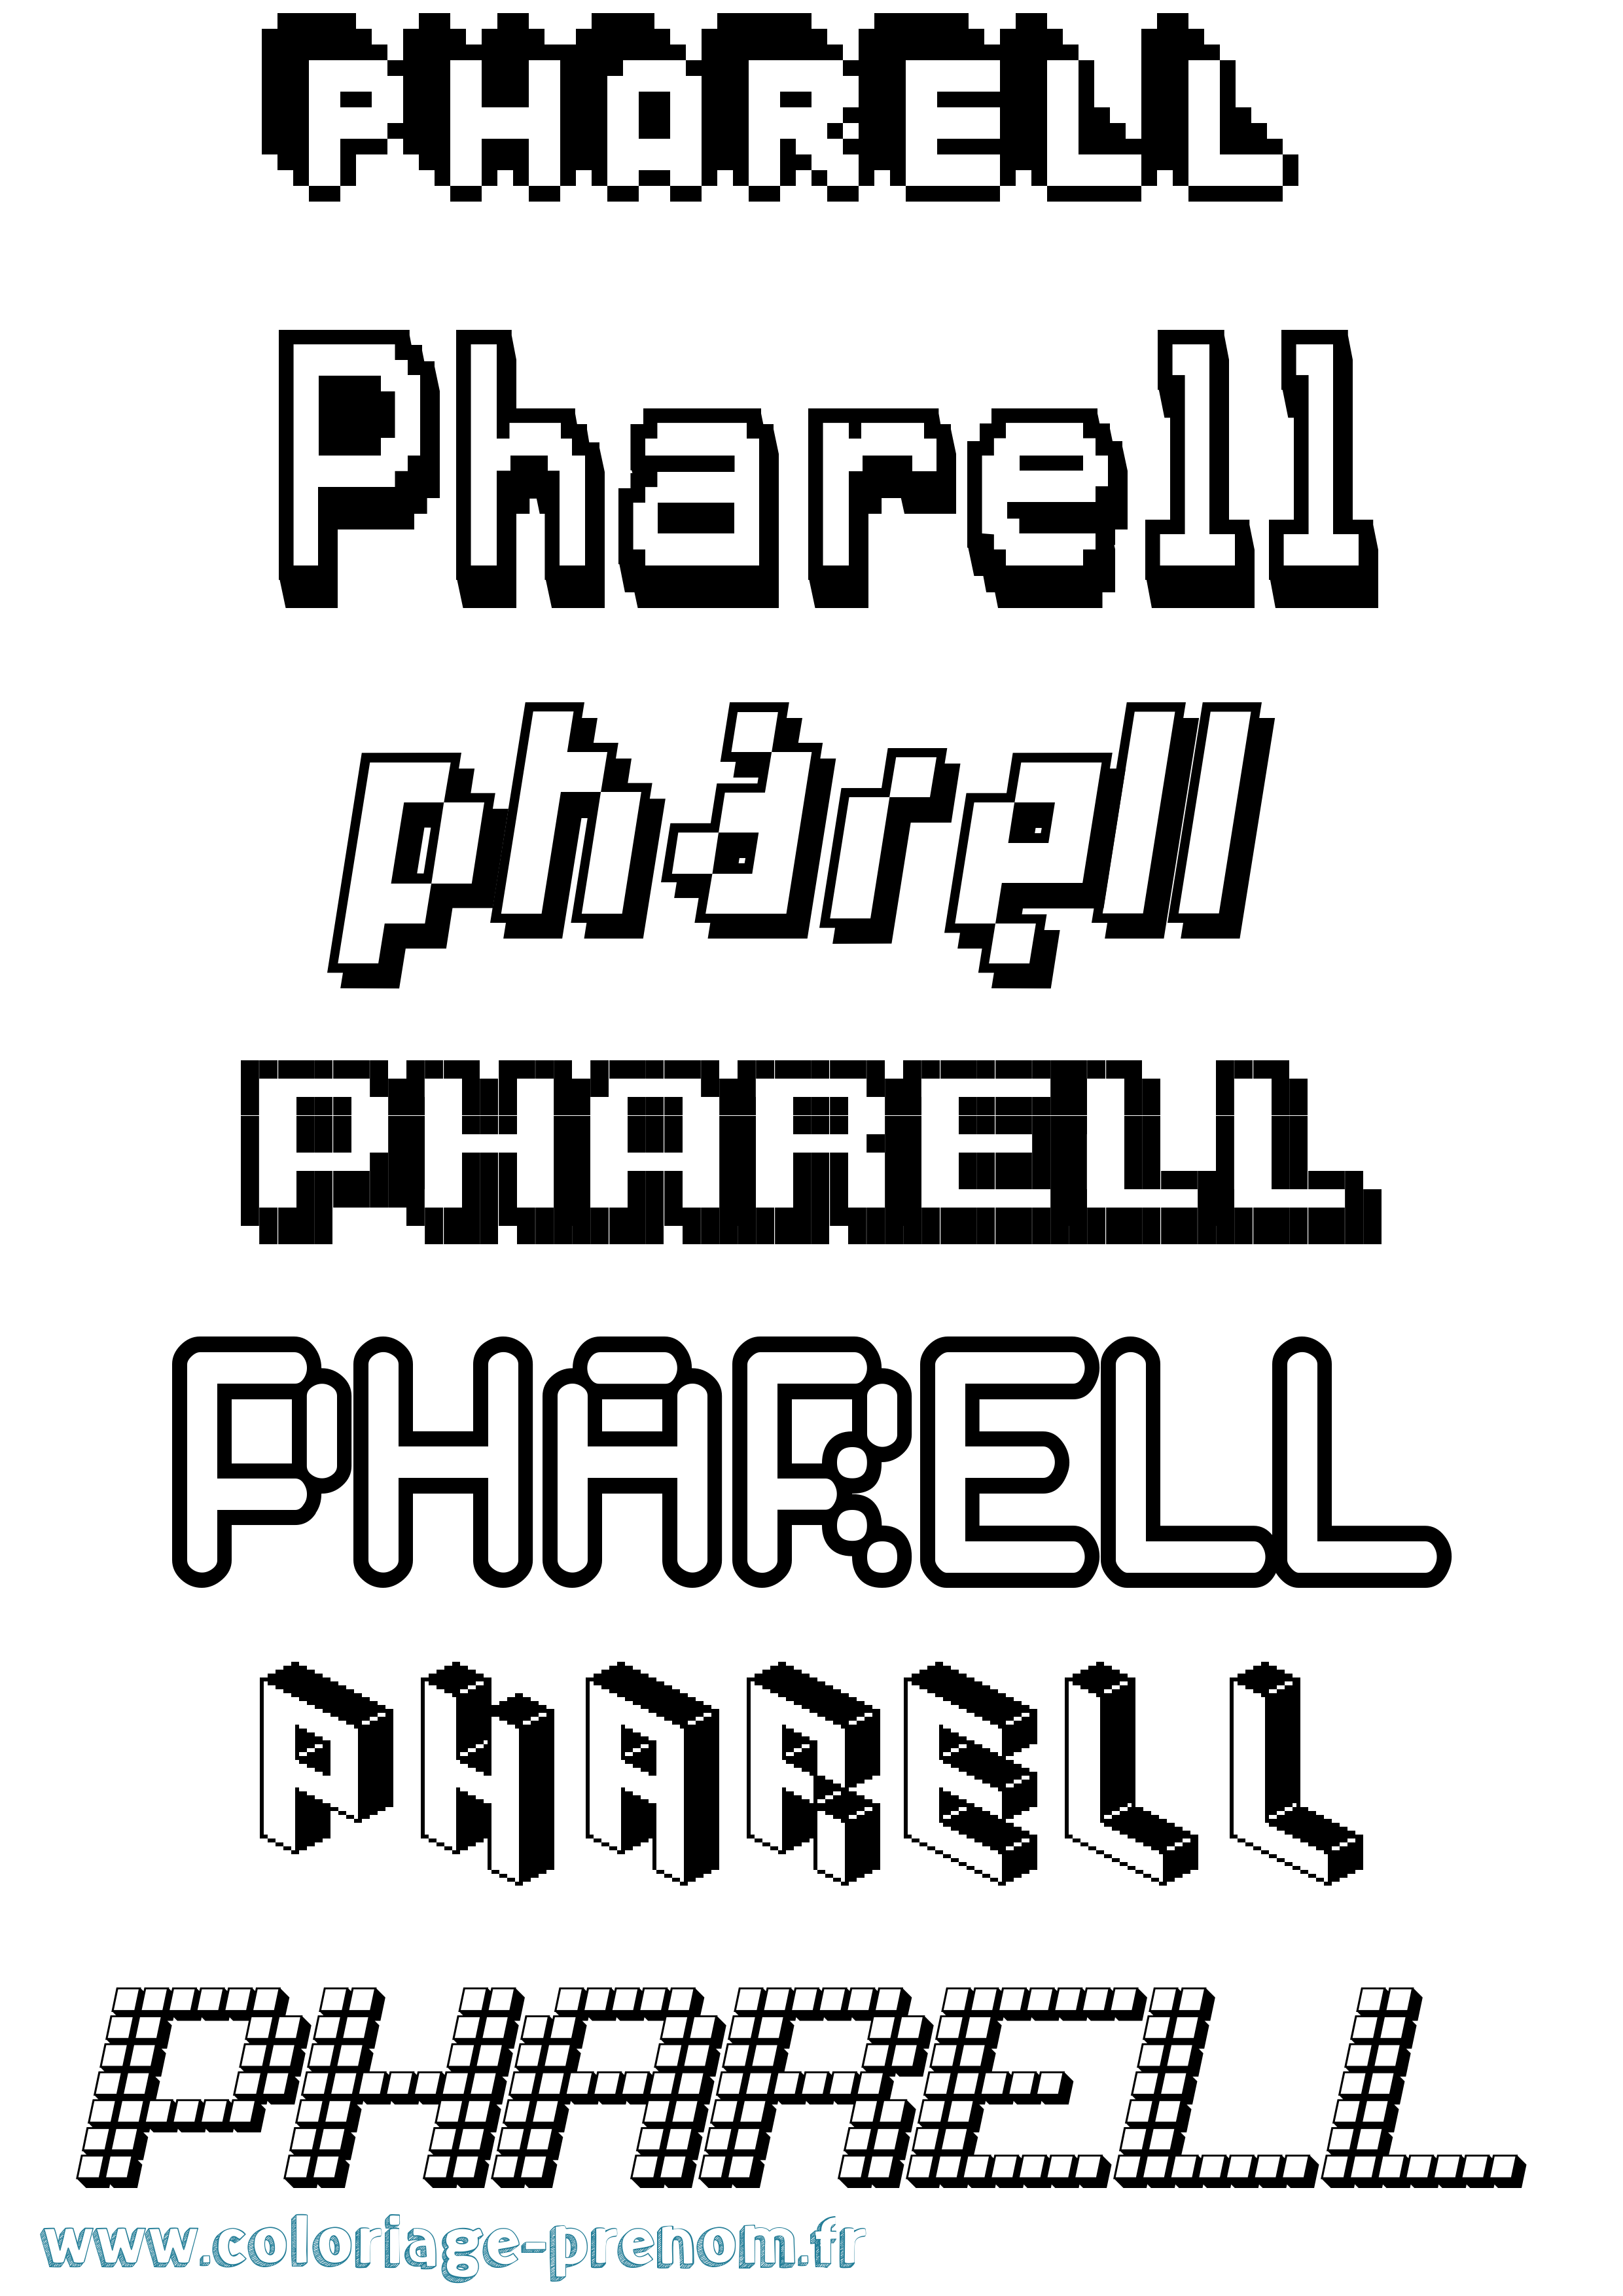 Coloriage prénom Pharell Pixel